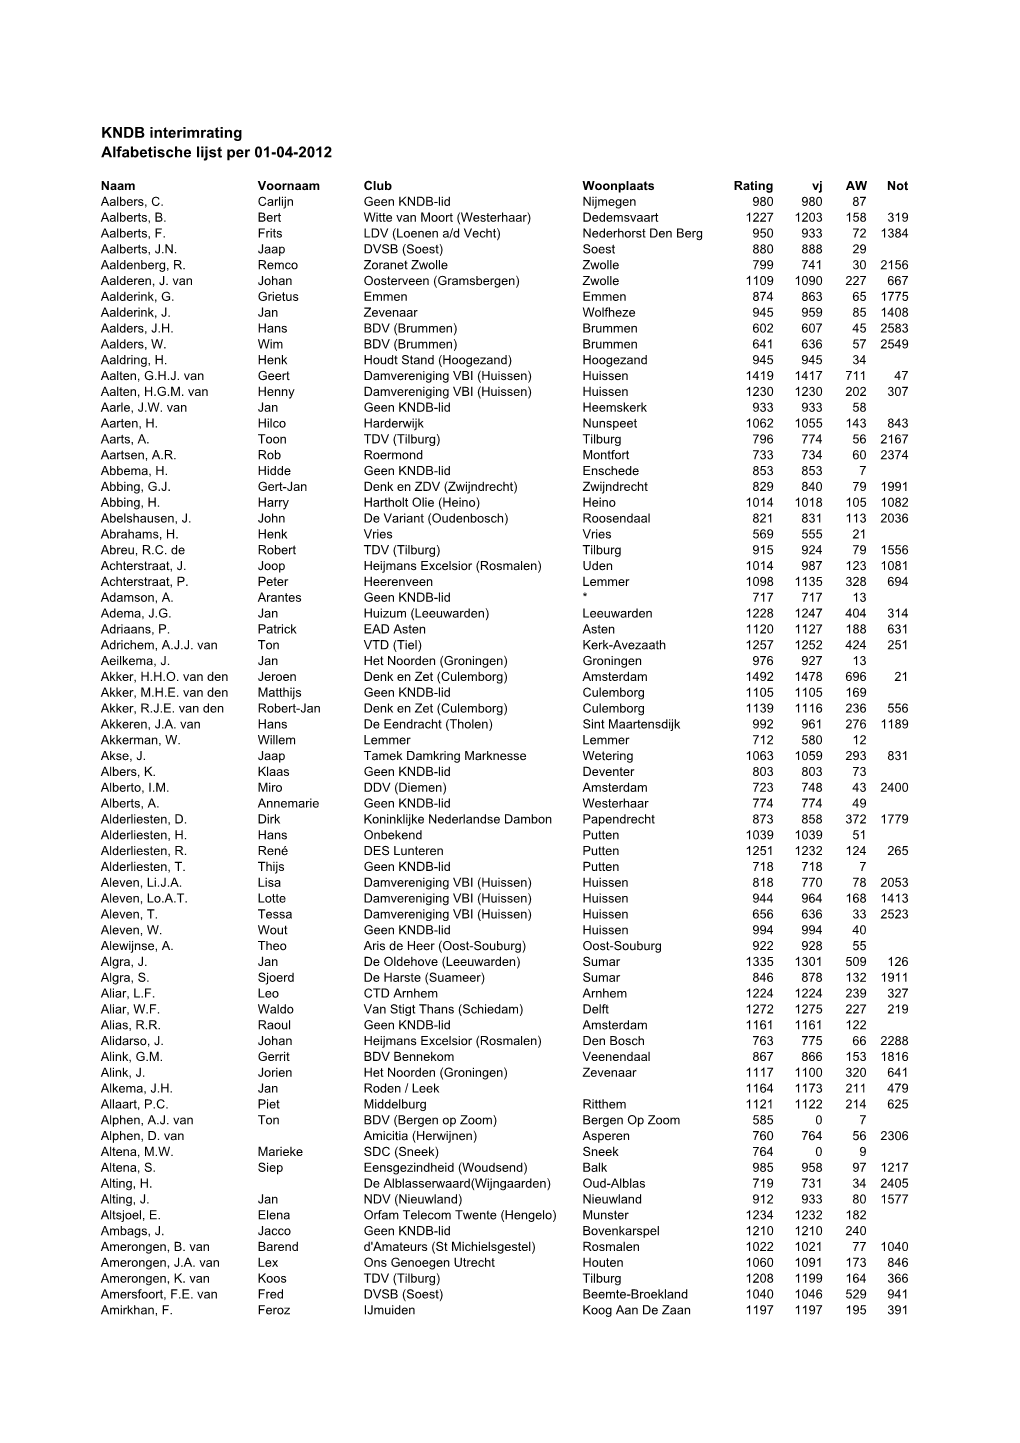 KNDB Interimrating Alfabetische Lijst Per 01-04-2012